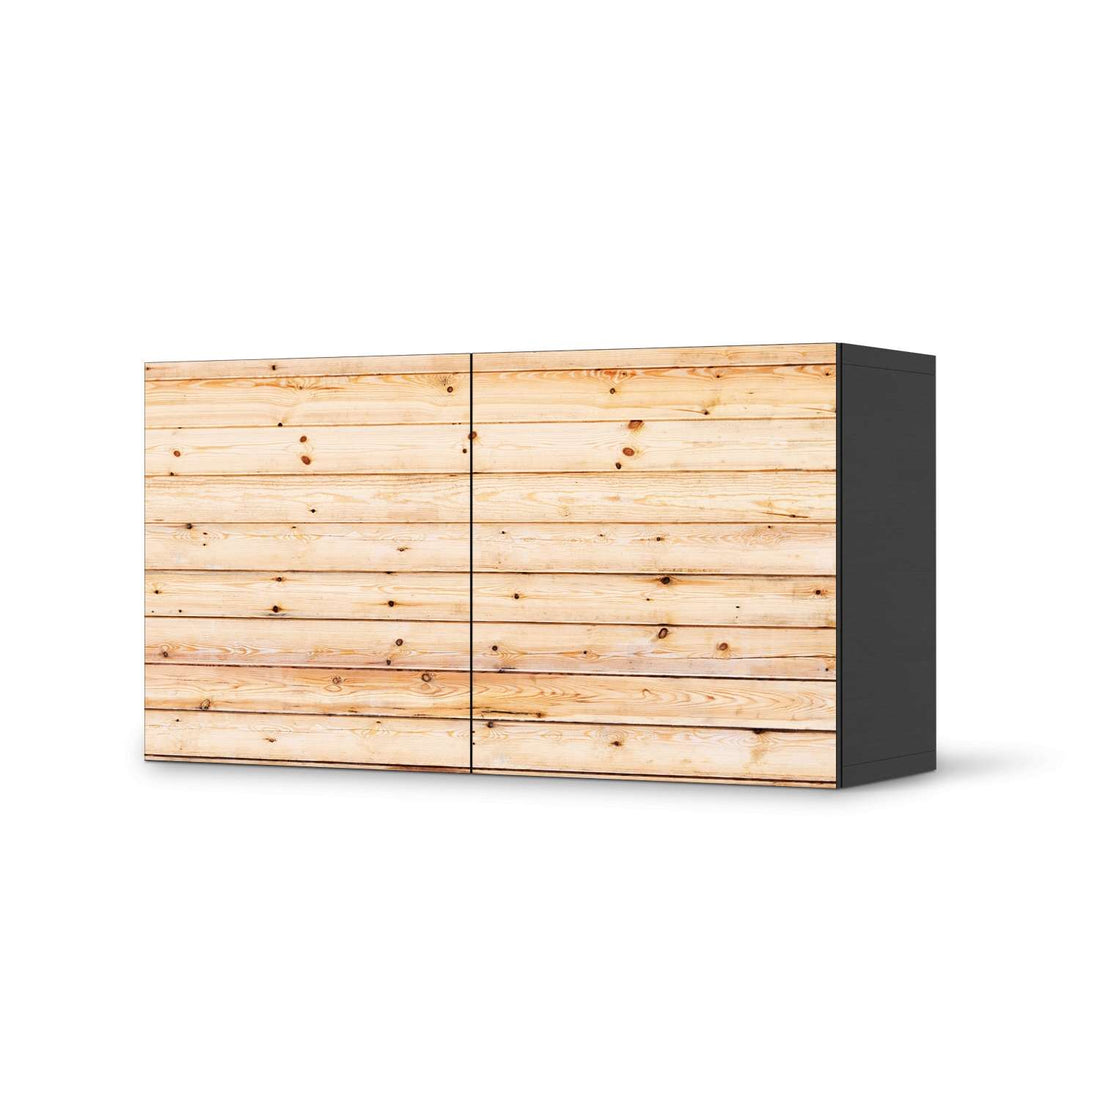 Folie für Möbel Bright Planks - IKEA Besta Regal Quer 2 Türen - schwarz